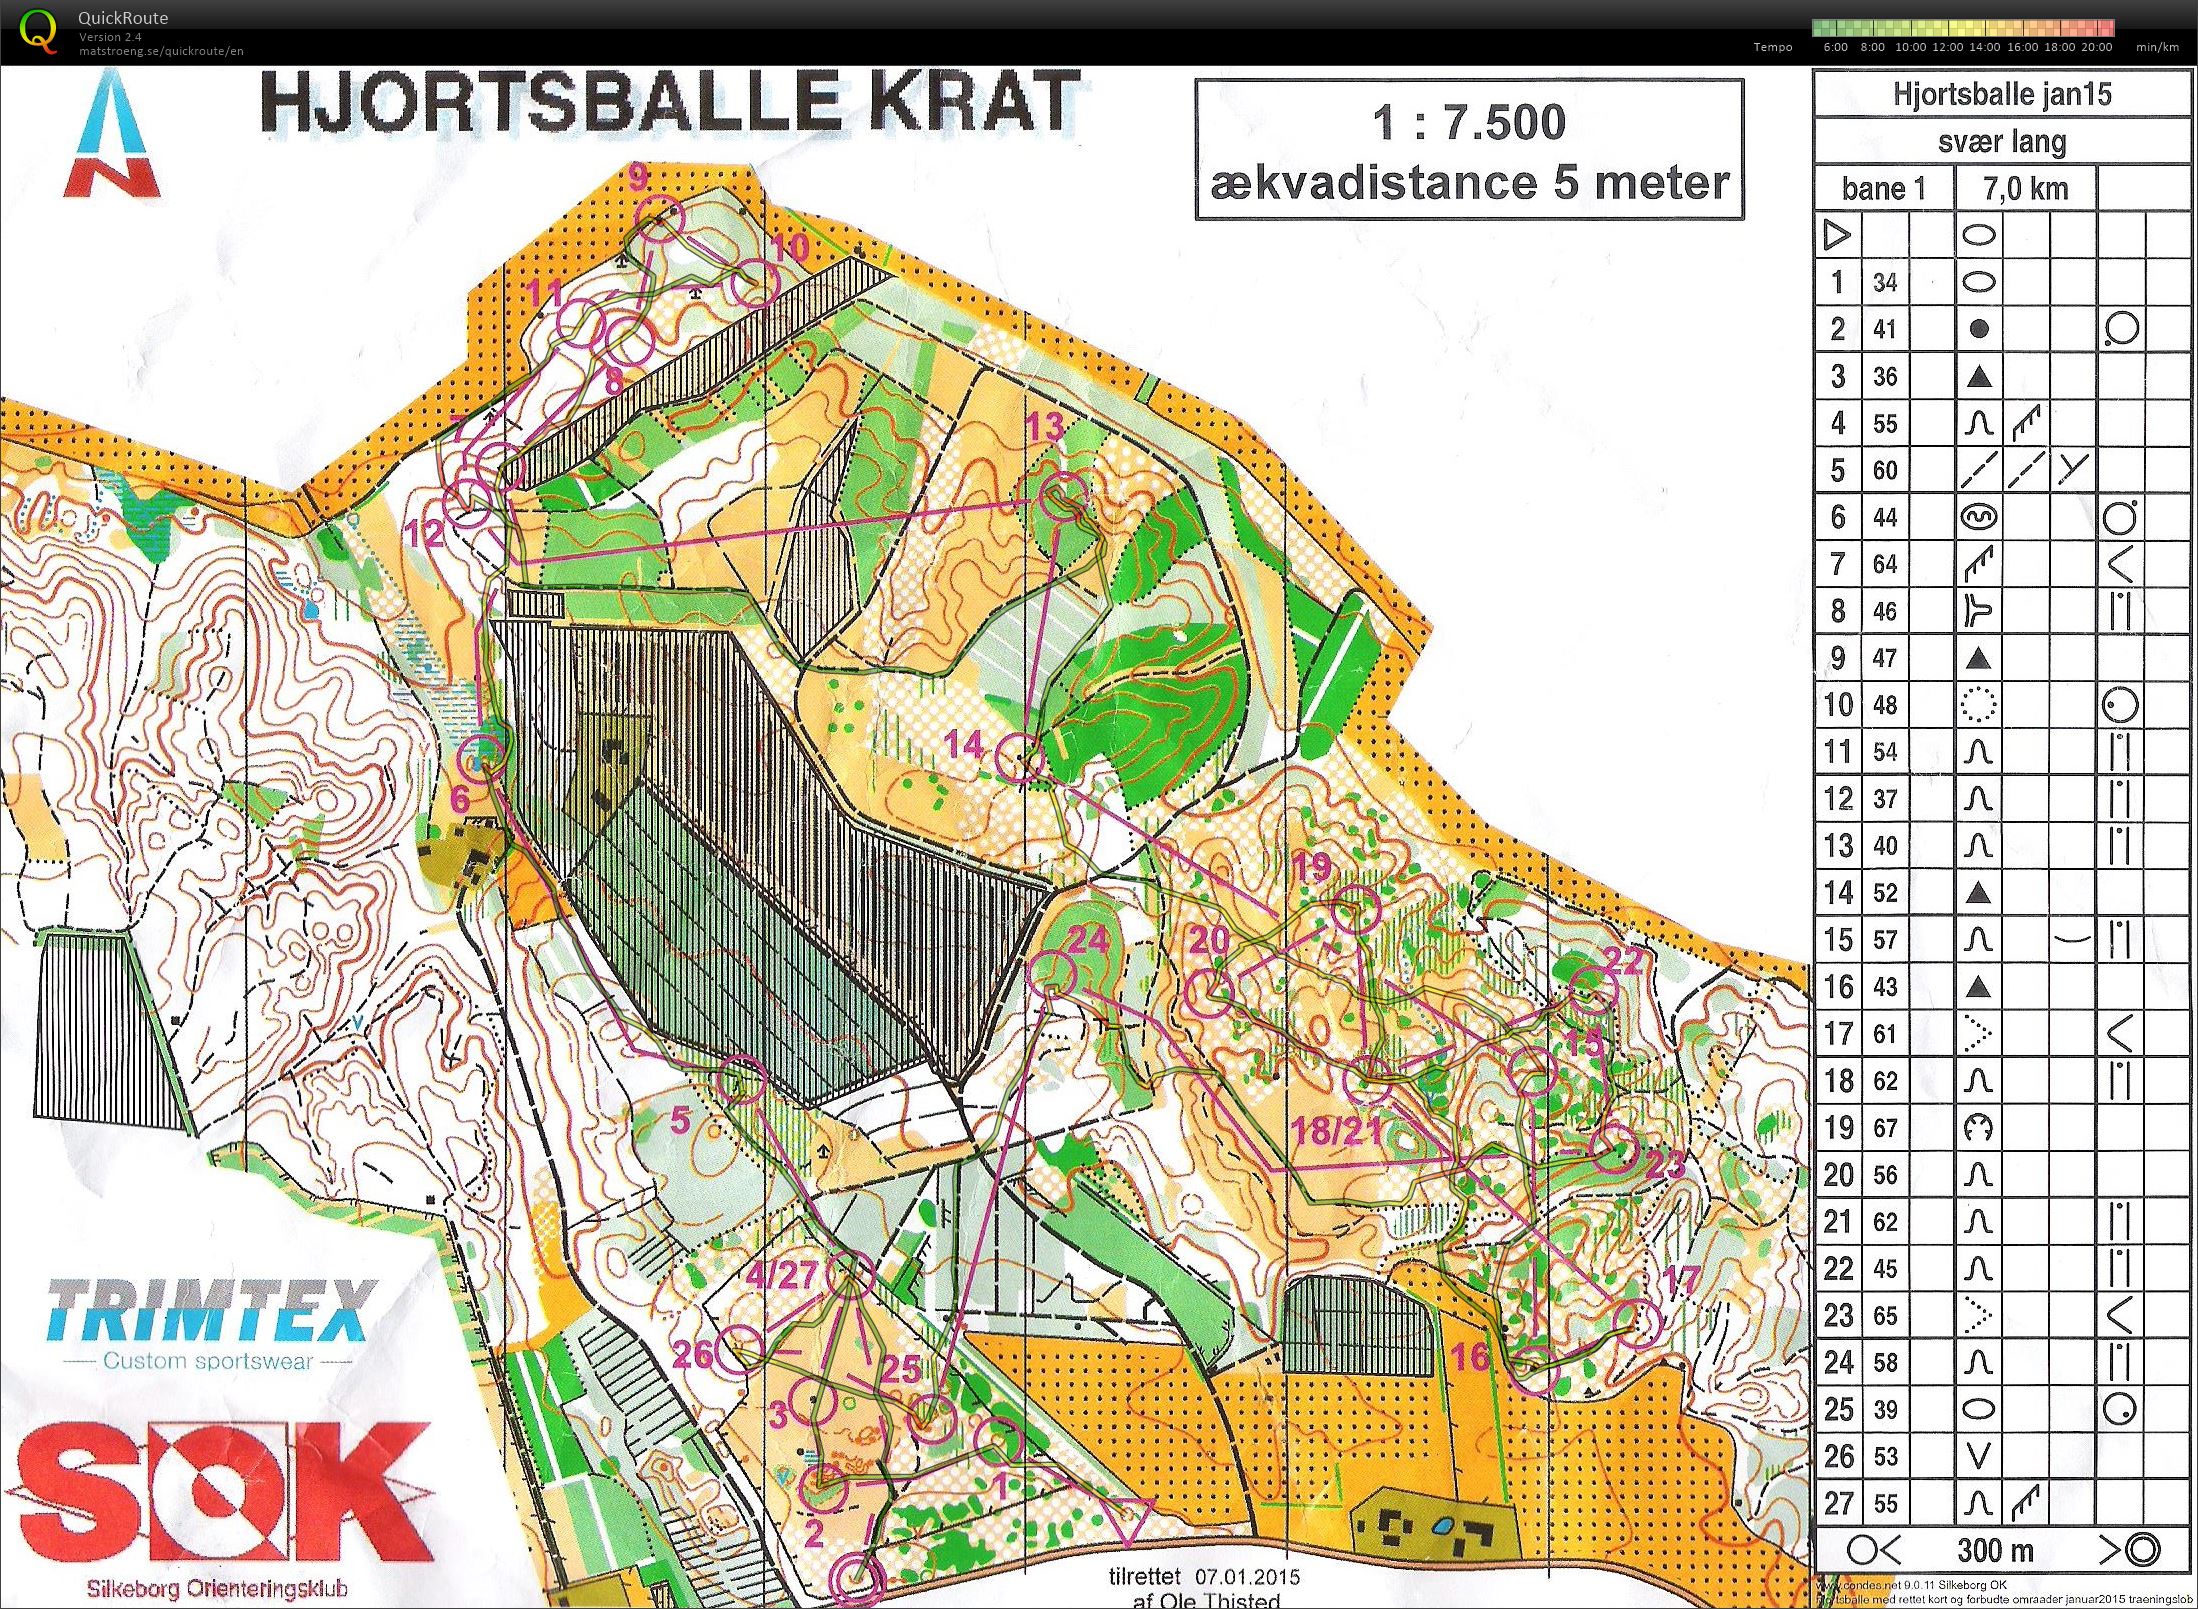 Hjortsballe Krat - Bane 1 - 7 km. (31-01-2015)